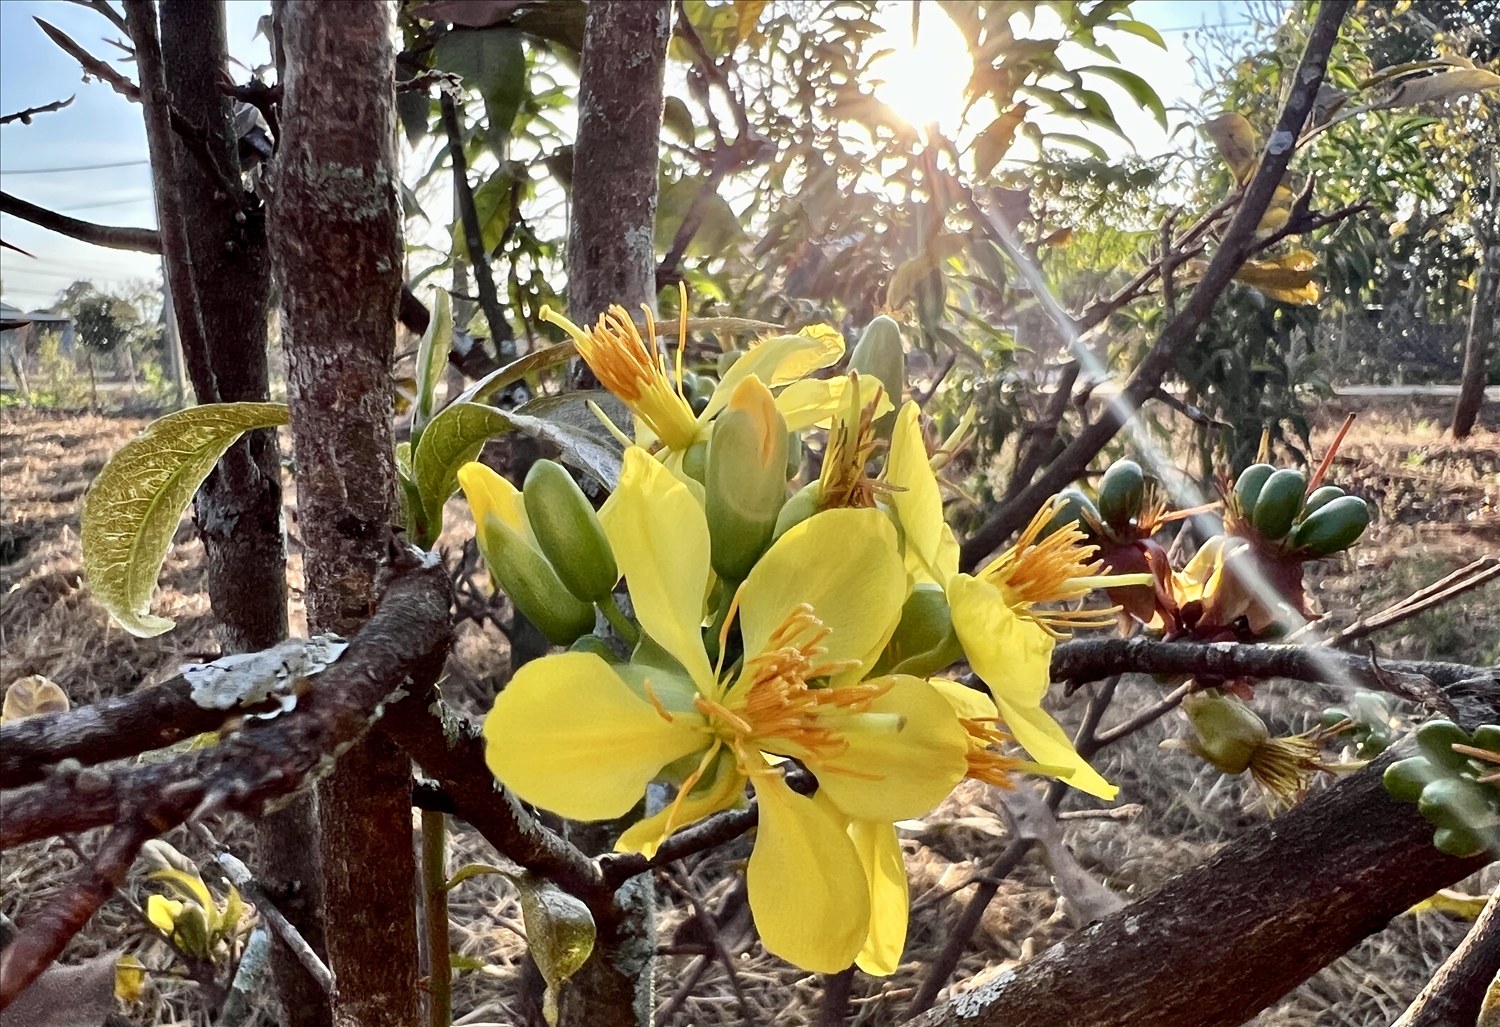 Hoa mai rừng 5 cánh có màu vàng tươi, hương thơm nhẹ và lâu tàn